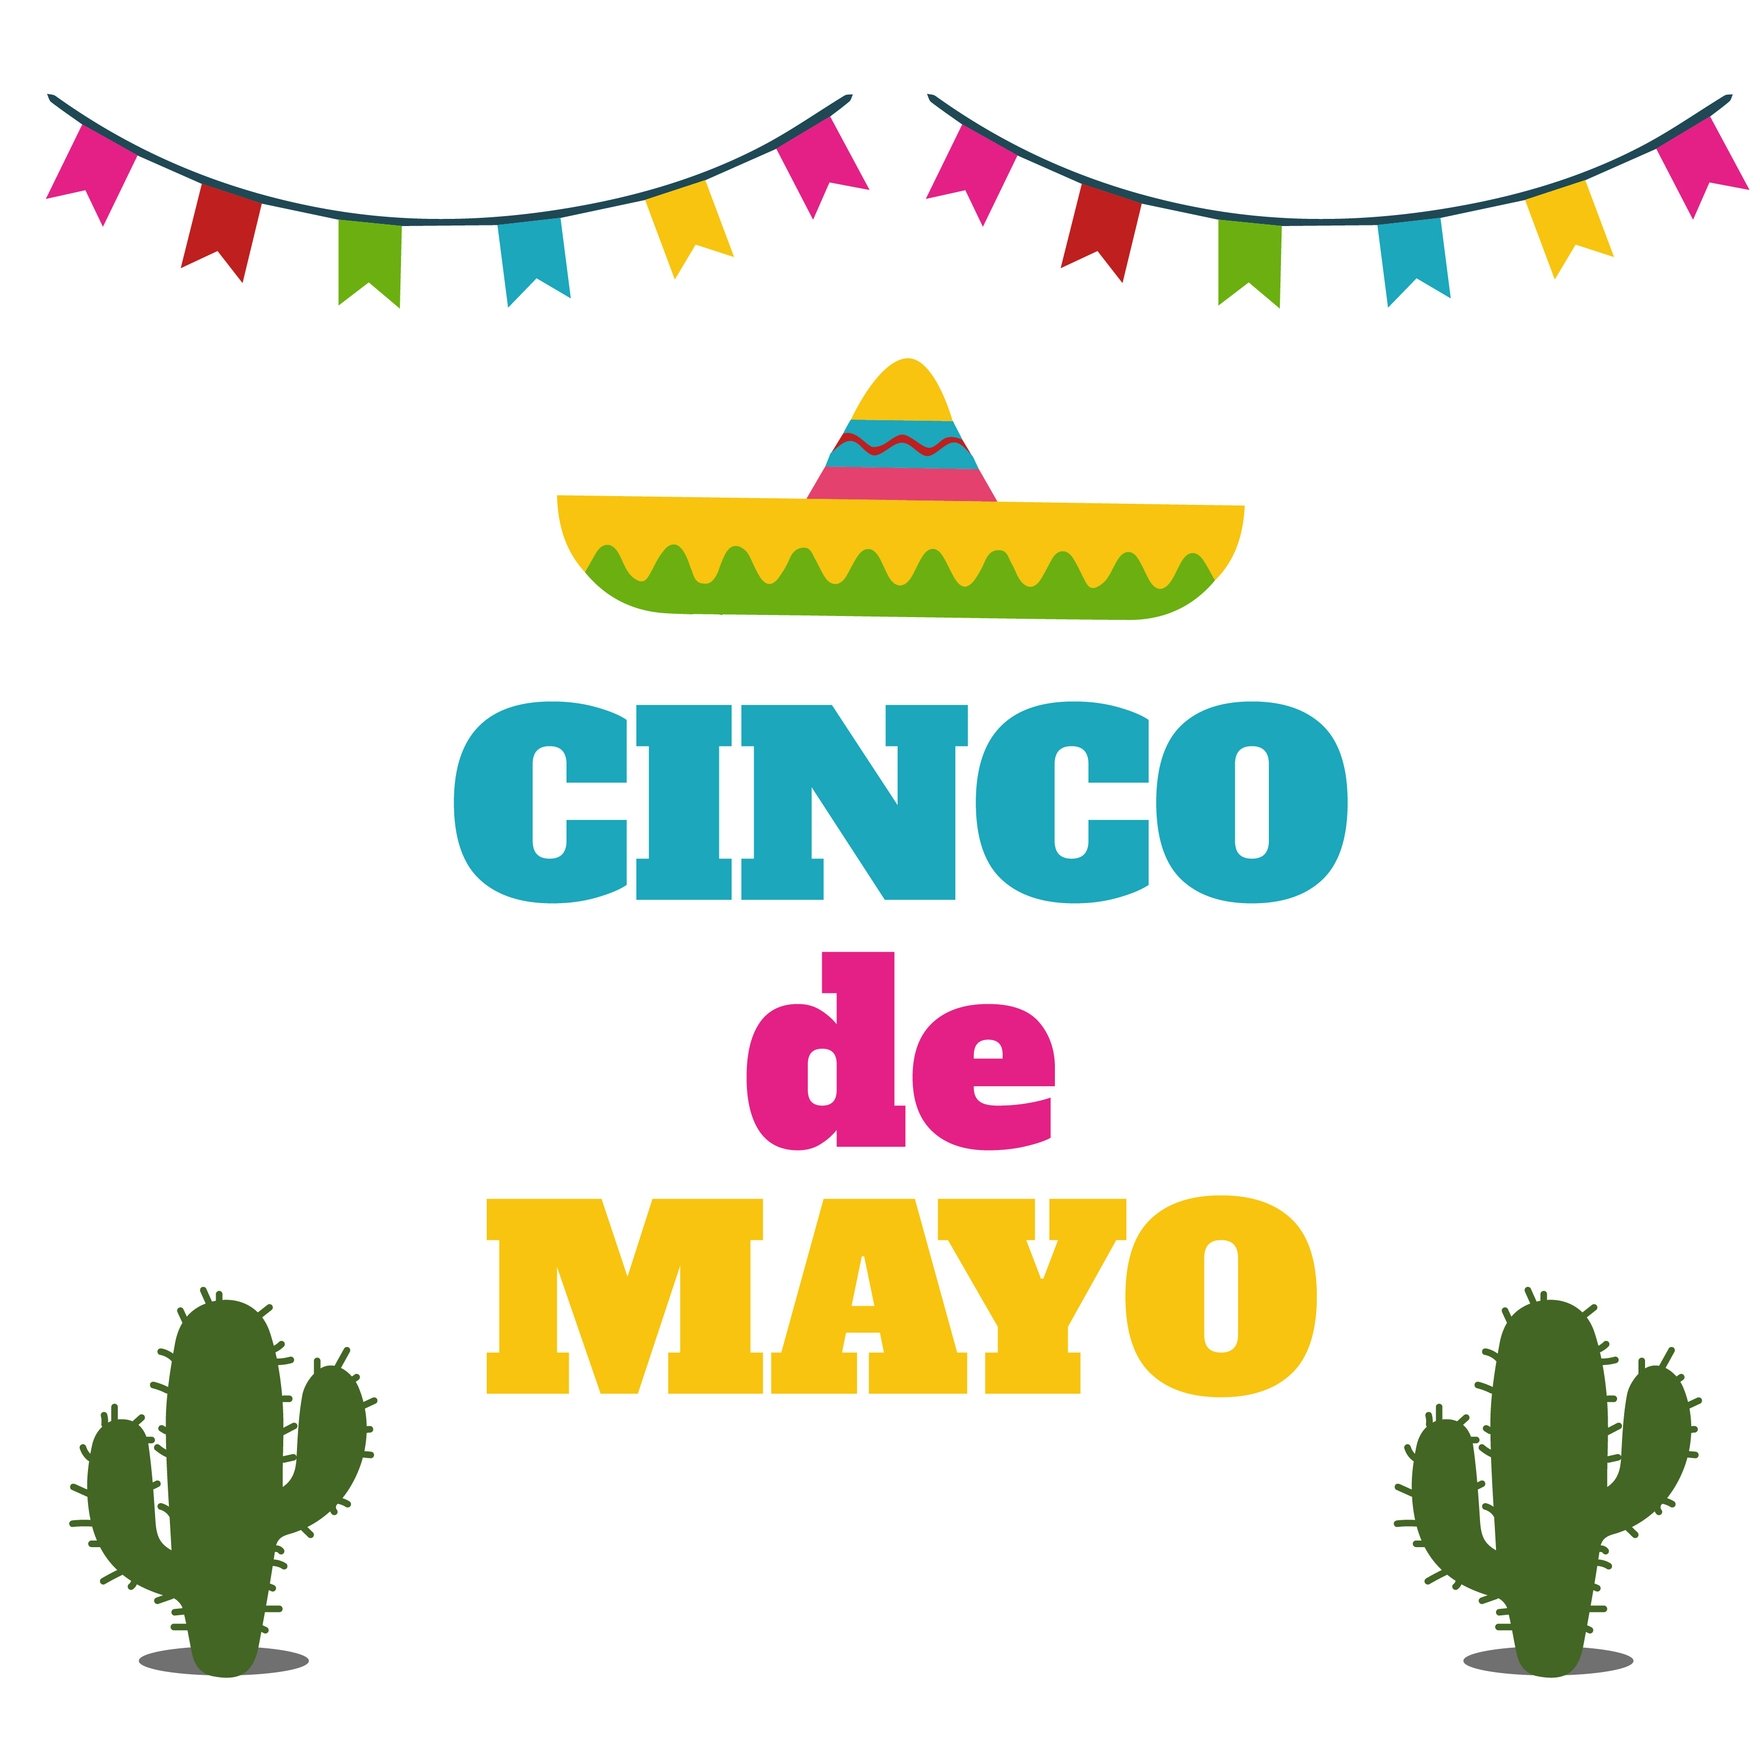 Animated Happy Cinco de Mayo Image